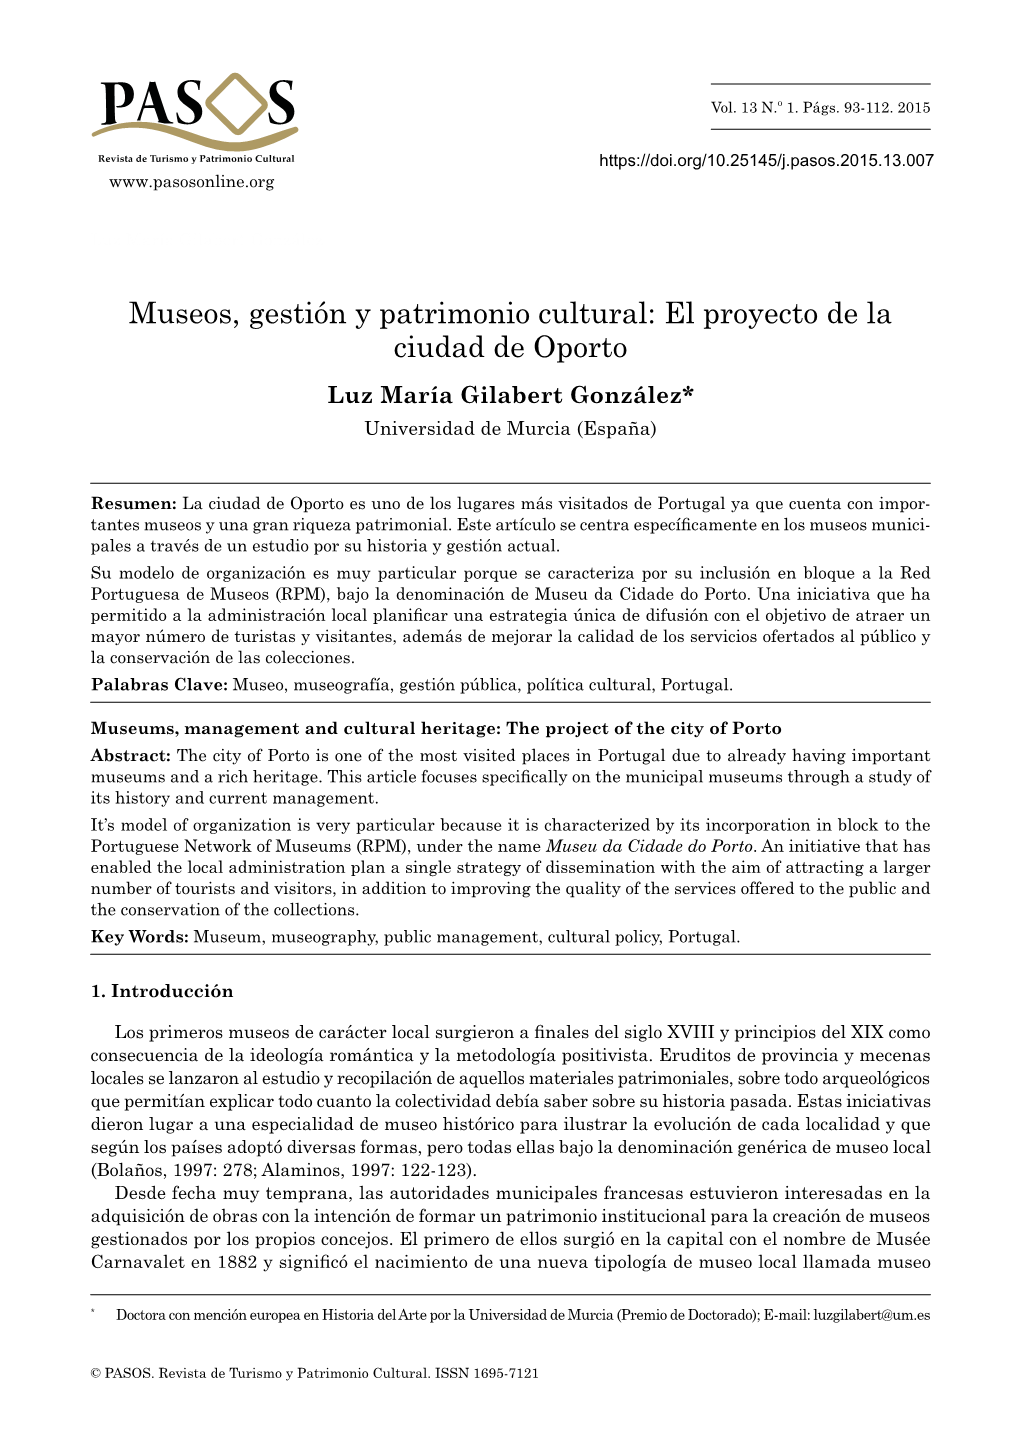 Museos, Gestión Y Patrimonio Cultural: El Proyecto De La Ciudad De Oporto Luz María Gilabert González* Universidad De Murcia (España)